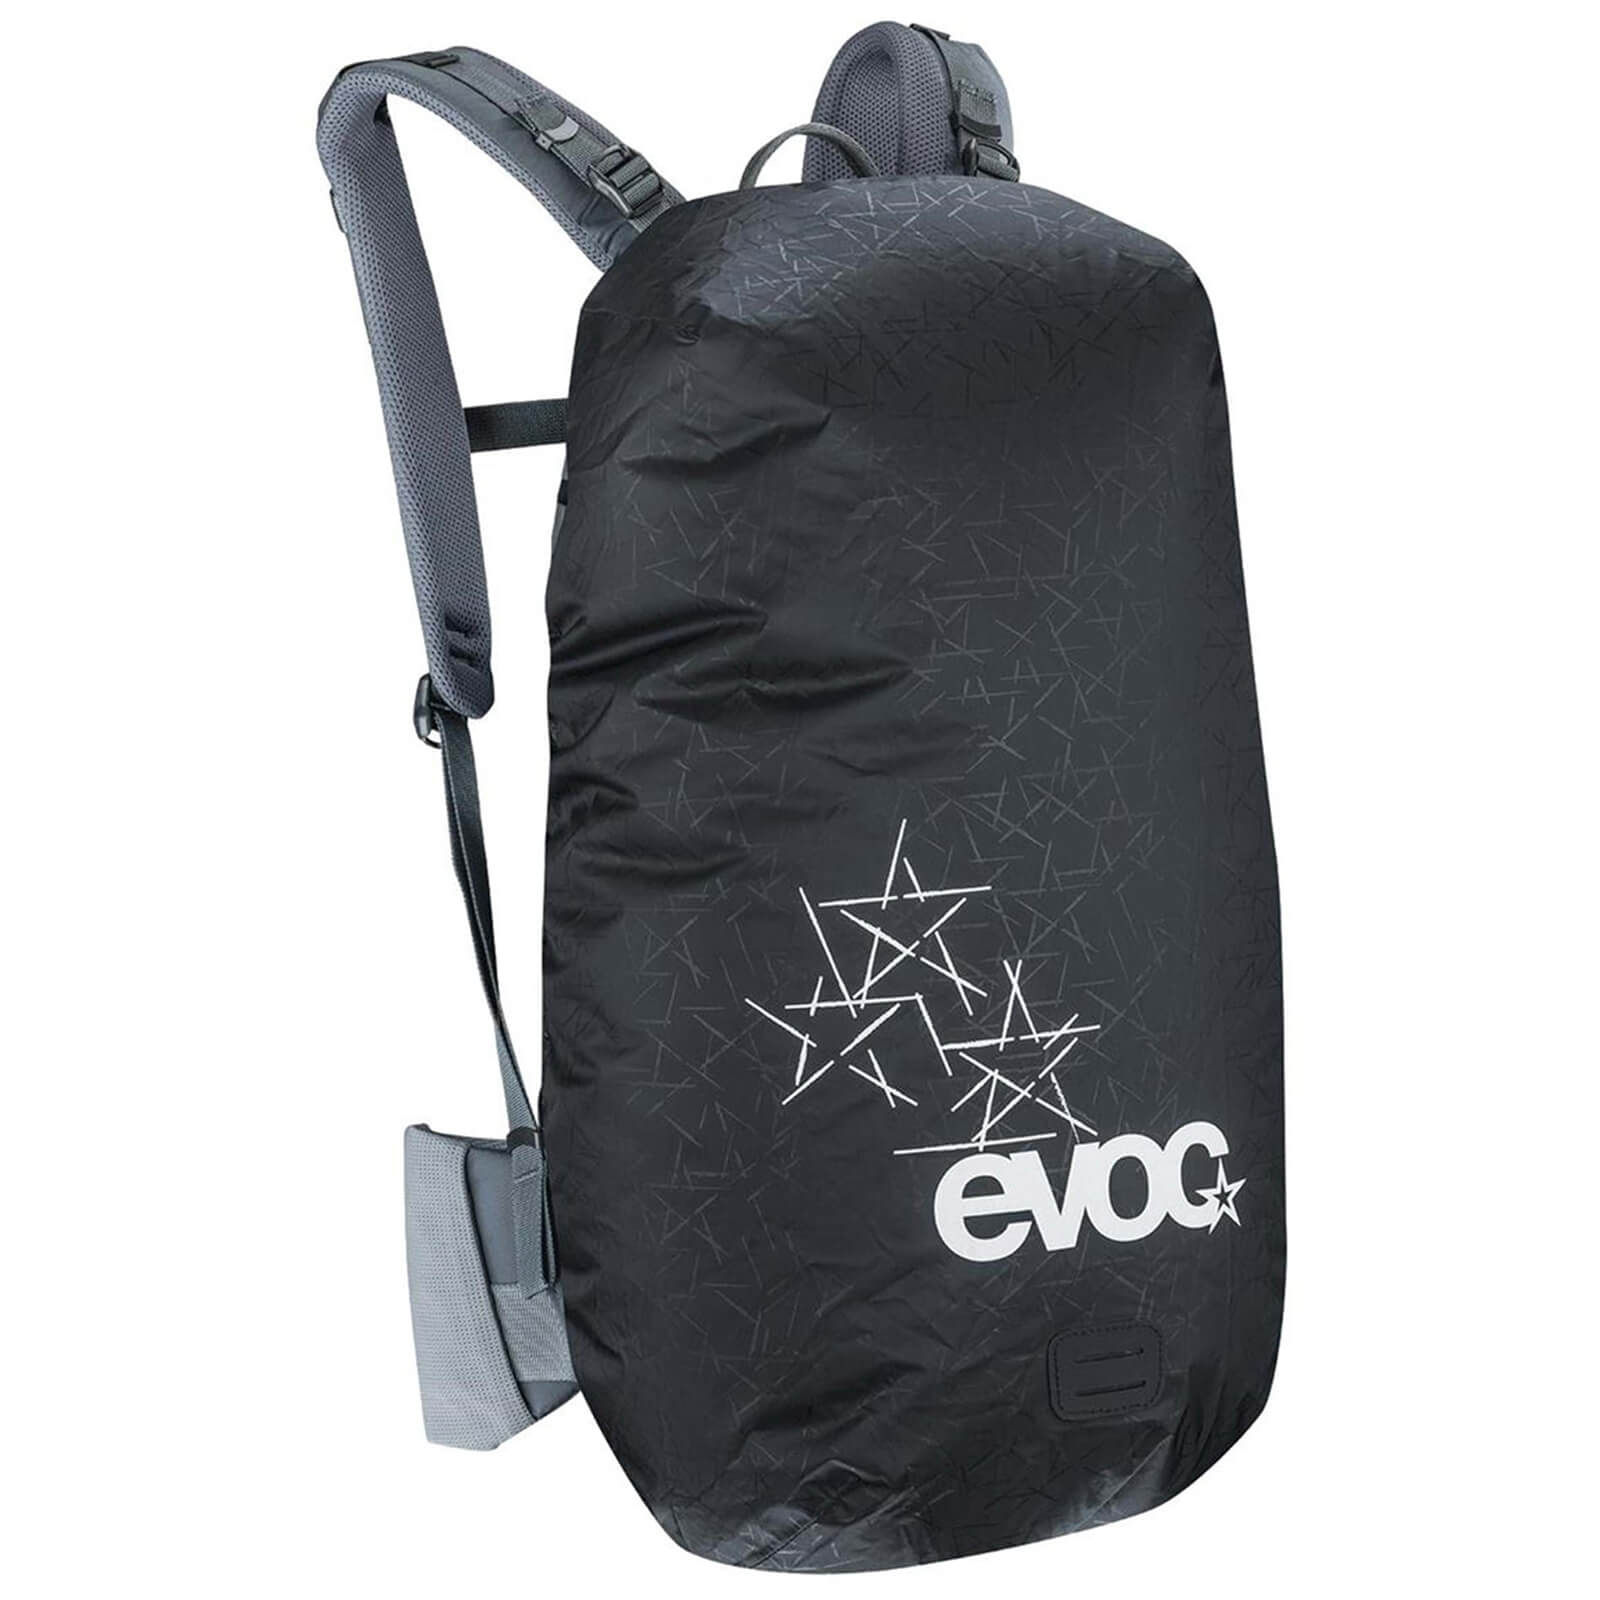 Evoc Medium Raincover Sleeve For Backpack - Black